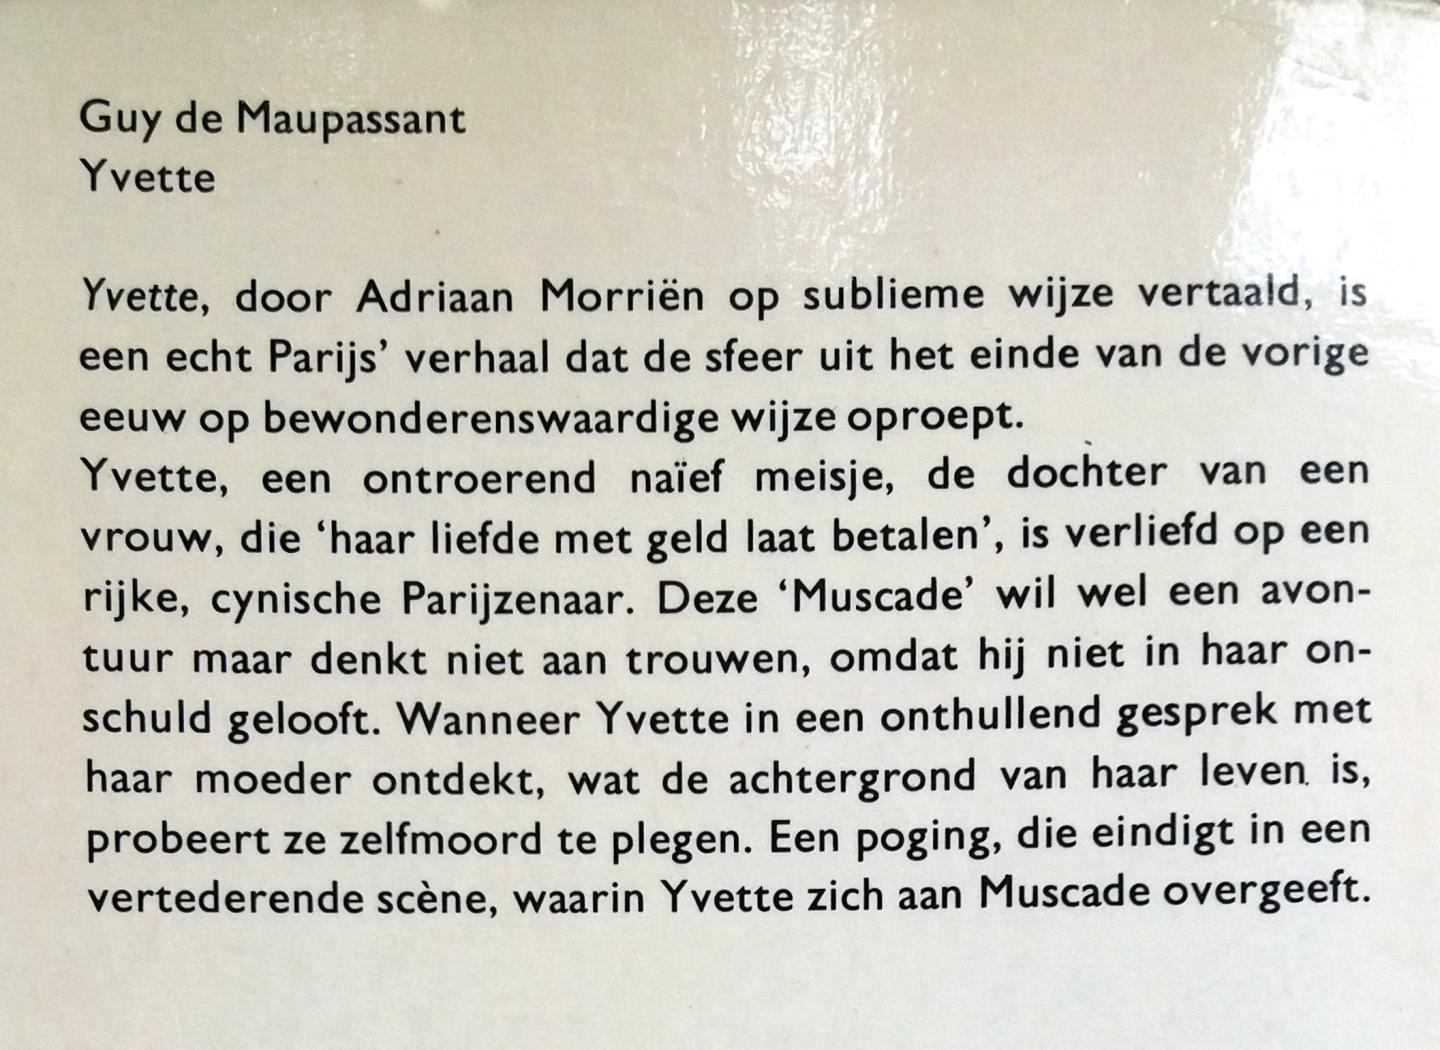 Maupassant, Guy de - Yvette (Ex.3)